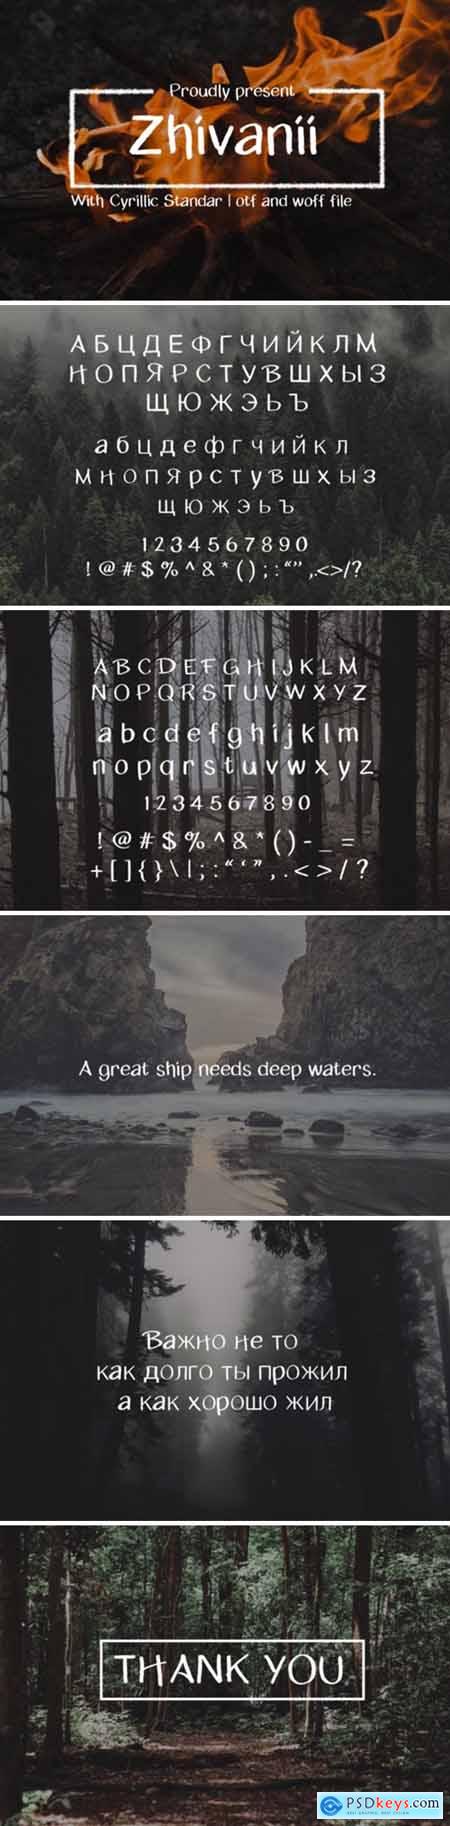 Zhivanii Font